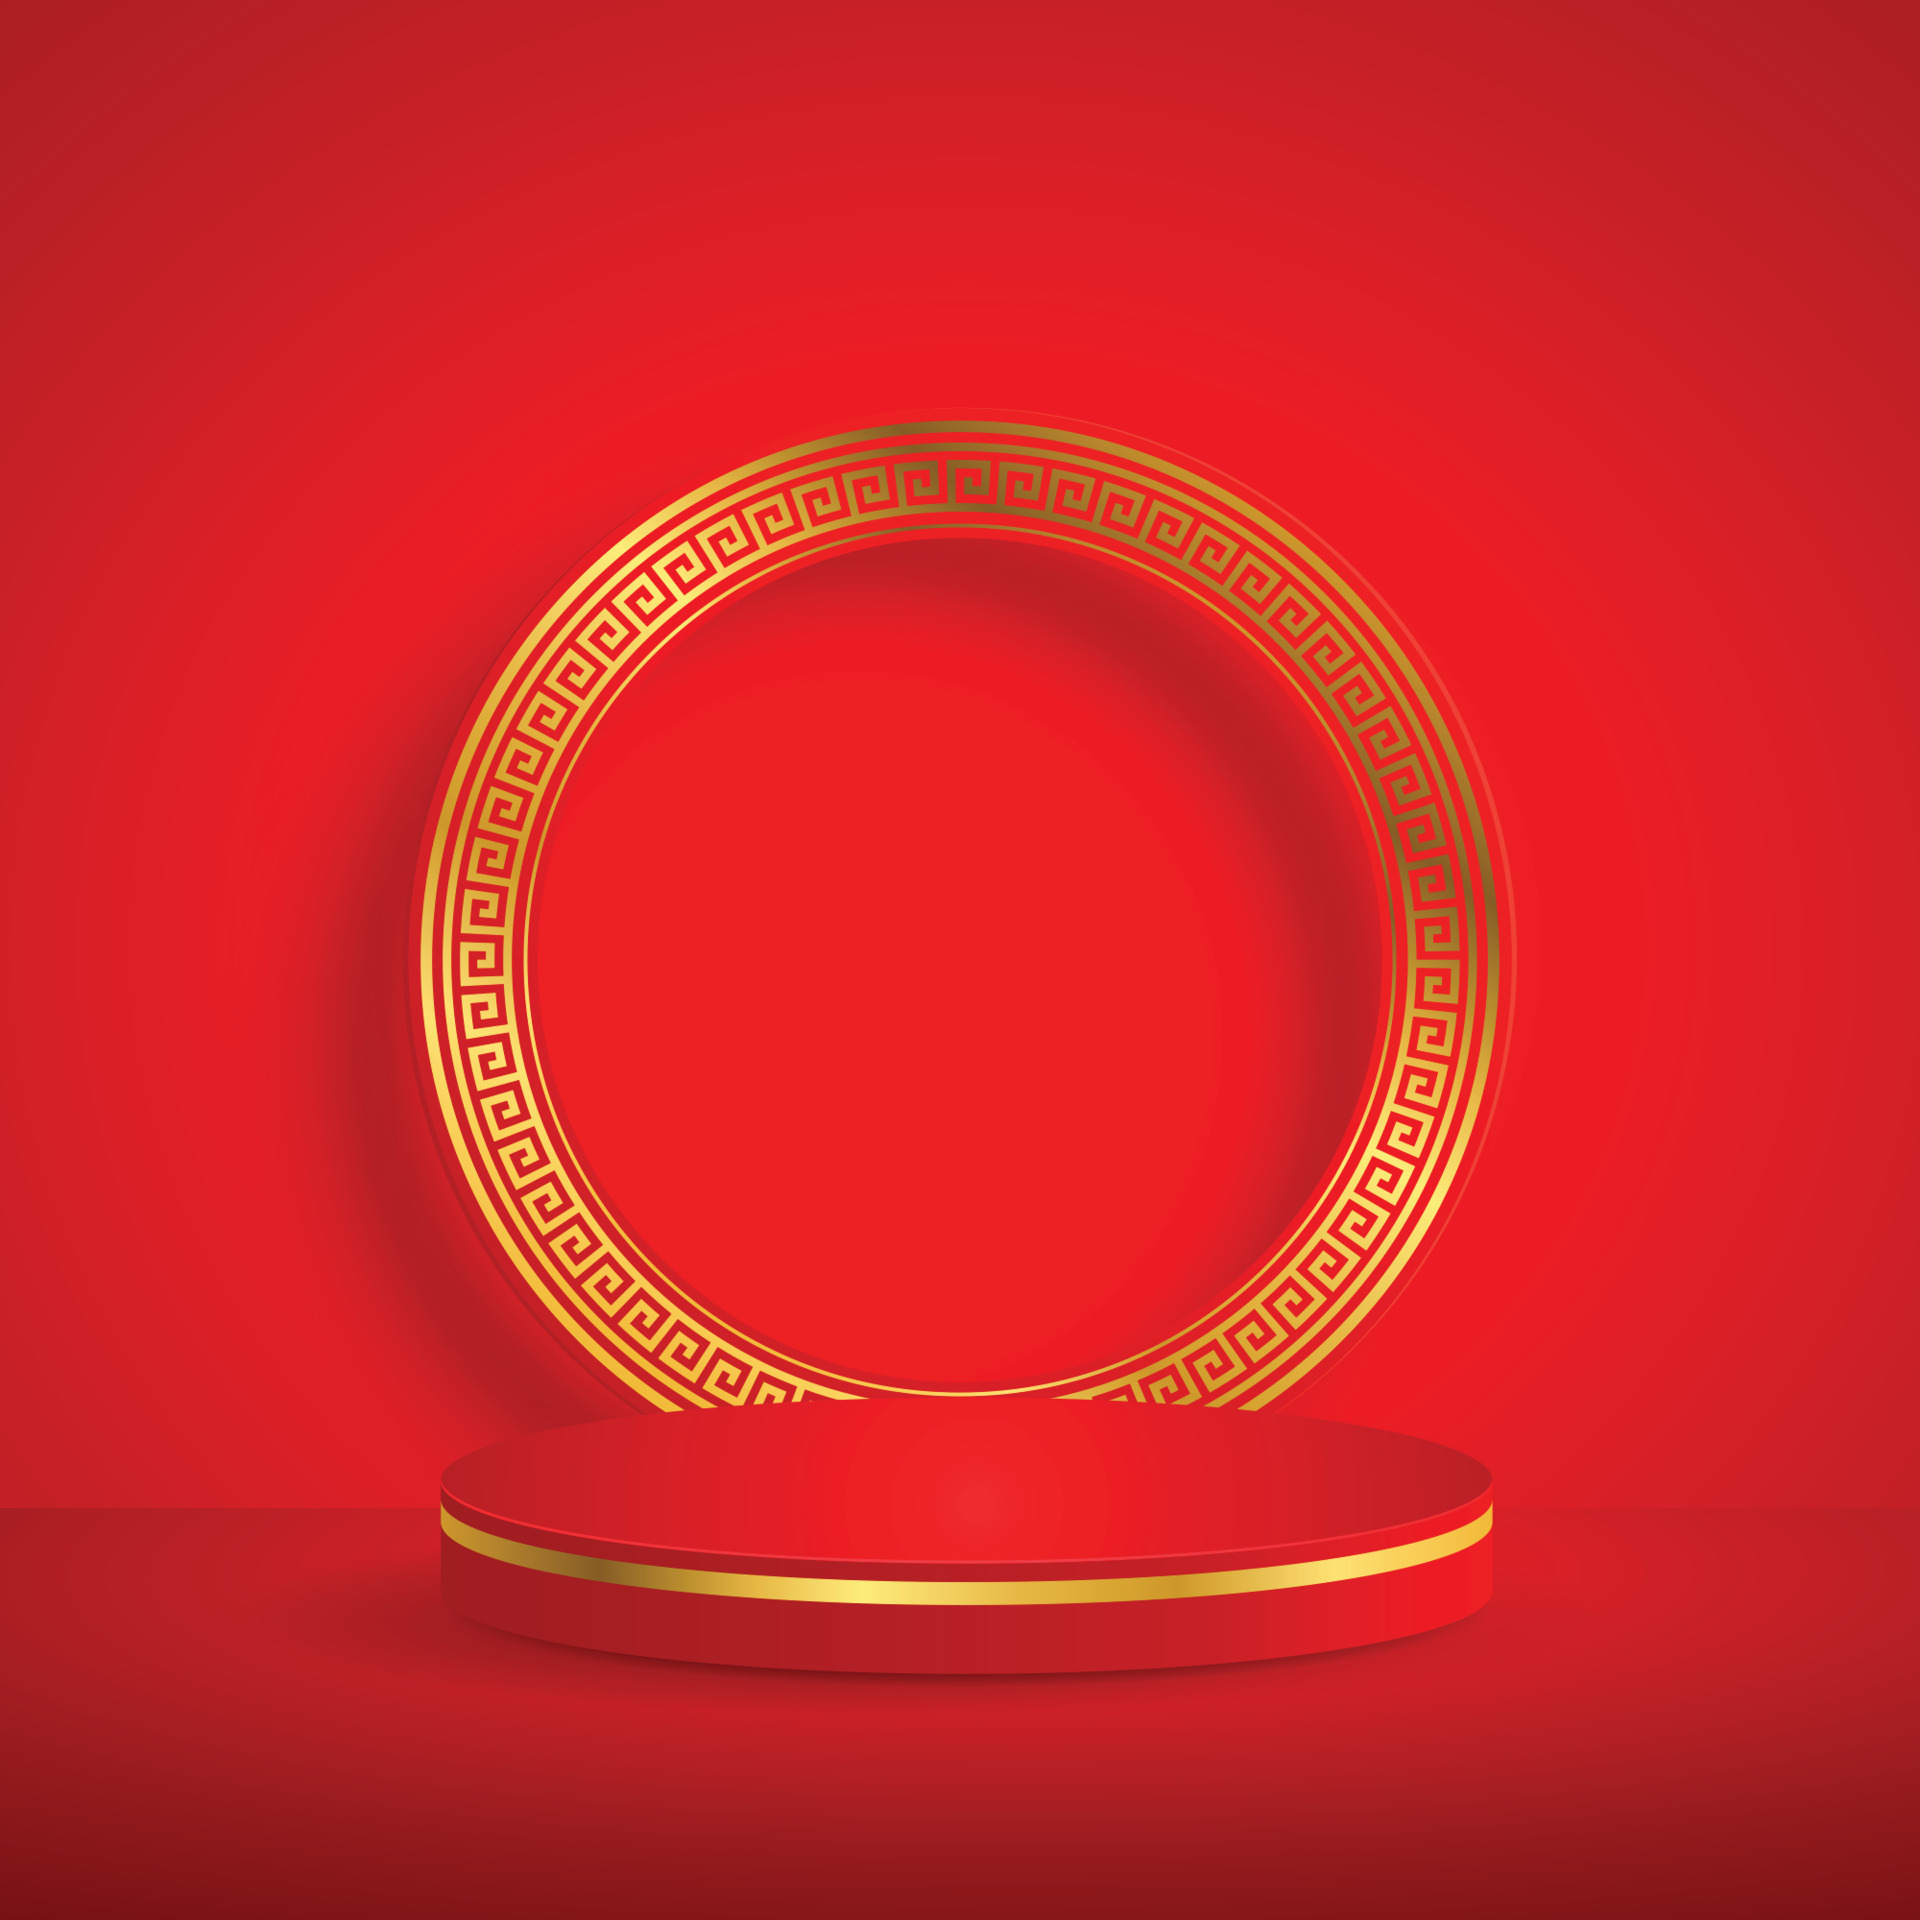 Nhìn vào hình ảnh vòng đấu thăng bằng, mẫu vàng Trung Quốc với phong cách đông Á - Hình nền thẻ mời đỏ, bạn sẽ cảm nhận được sự cân bằng và quyền uy của những người đứng trên nó. Mẫu vàng Trung Quốc pha trộn với phong cách đông Á mang đến một sự kết hợp hoàn hảo cho bất kỳ sự kiện nào. Bạn sẽ không muốn bỏ lỡ cơ hội để xem một bức ảnh tuyệt đẹp này.